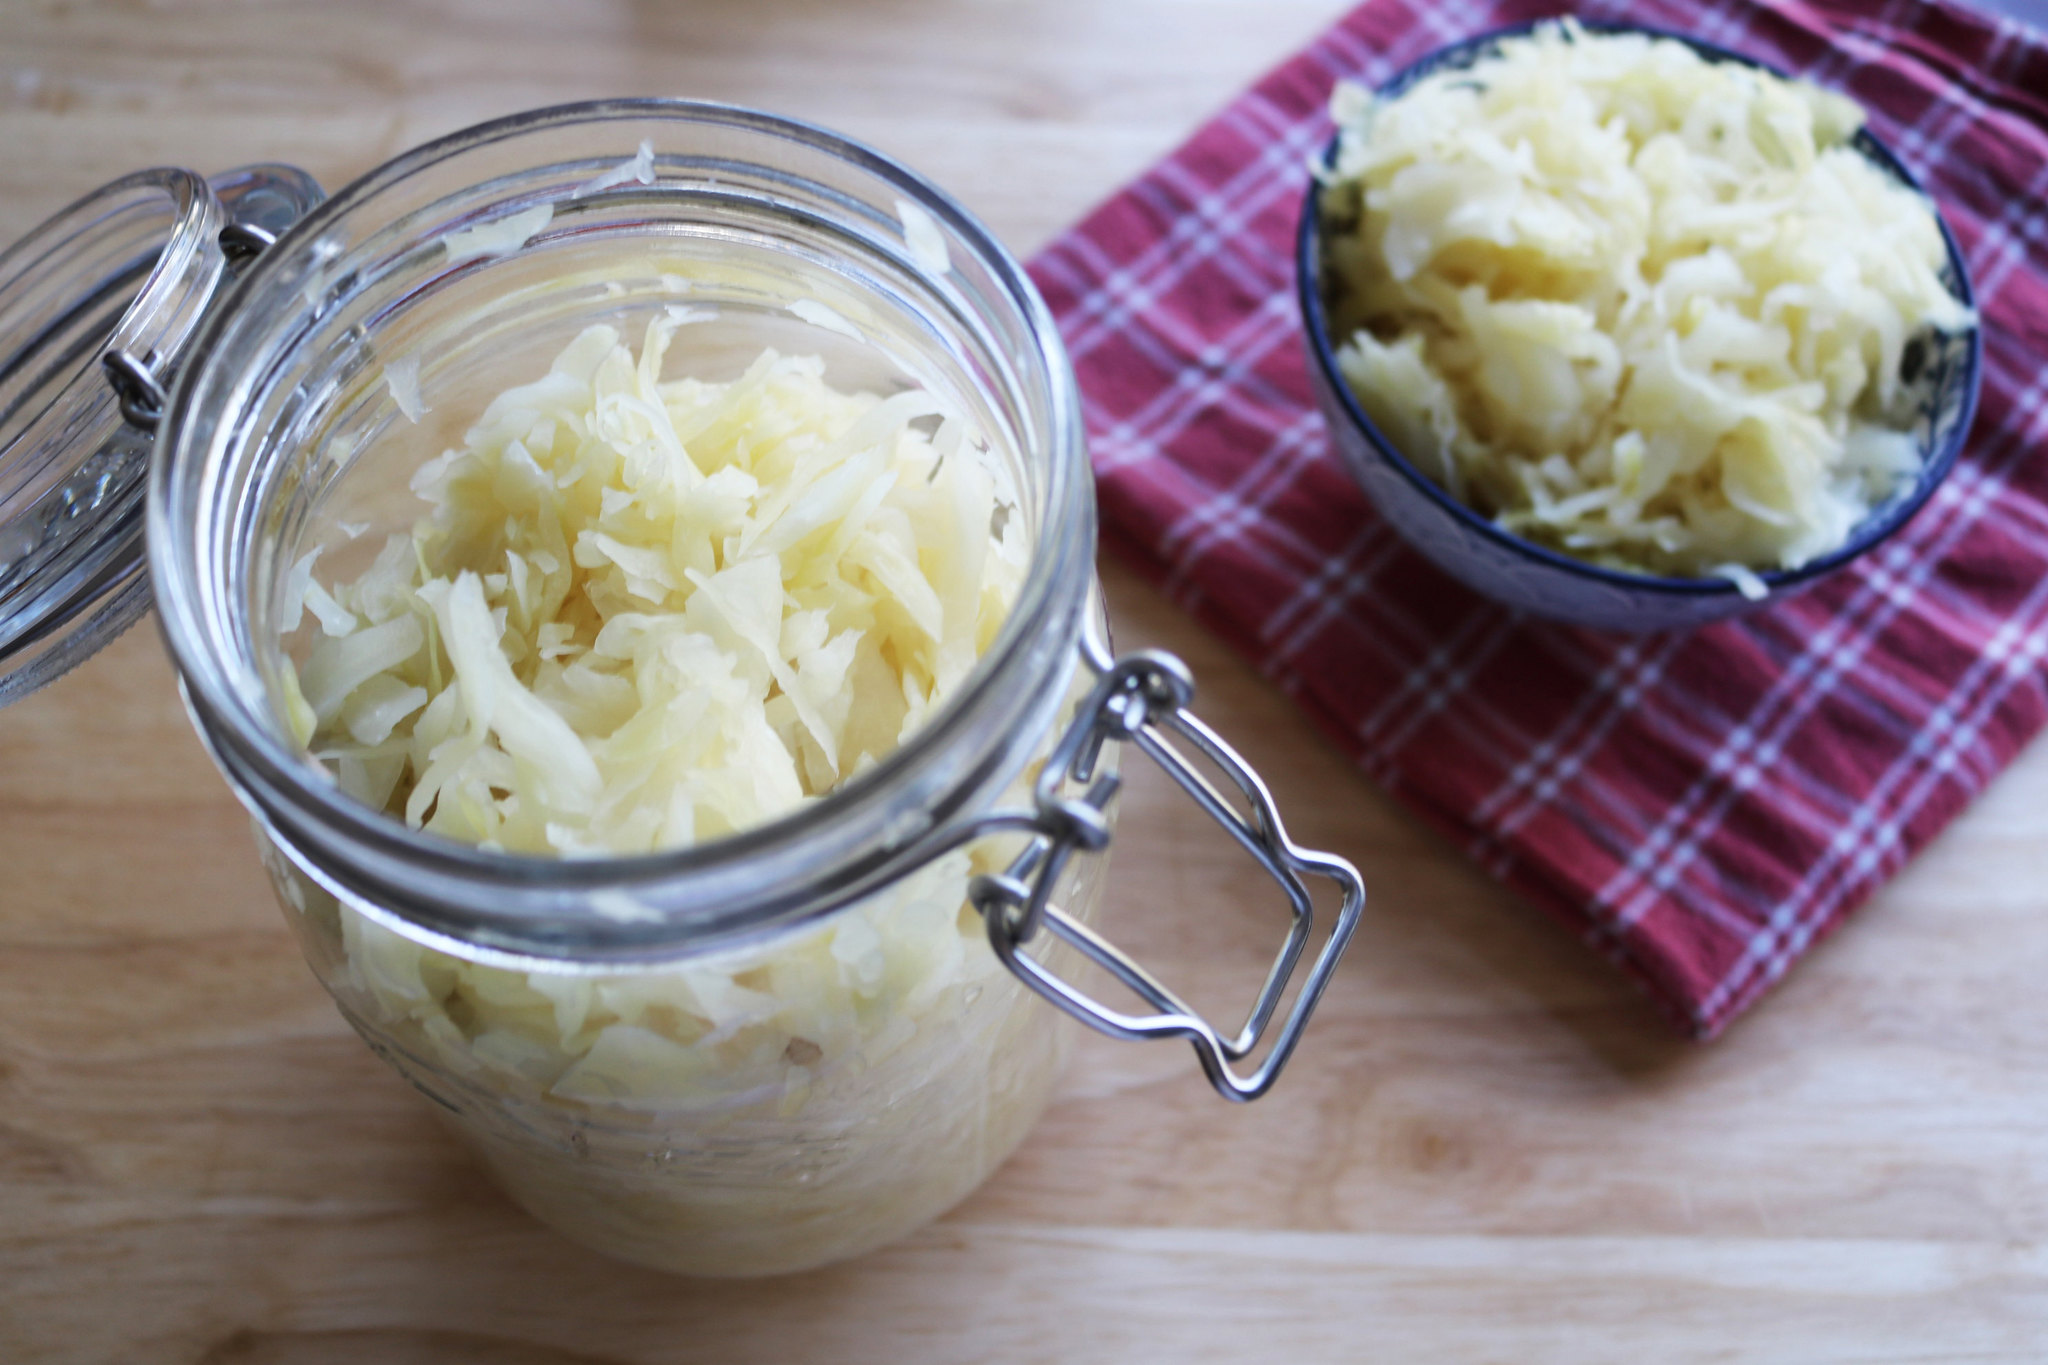 Make your own sauerkraut recipe